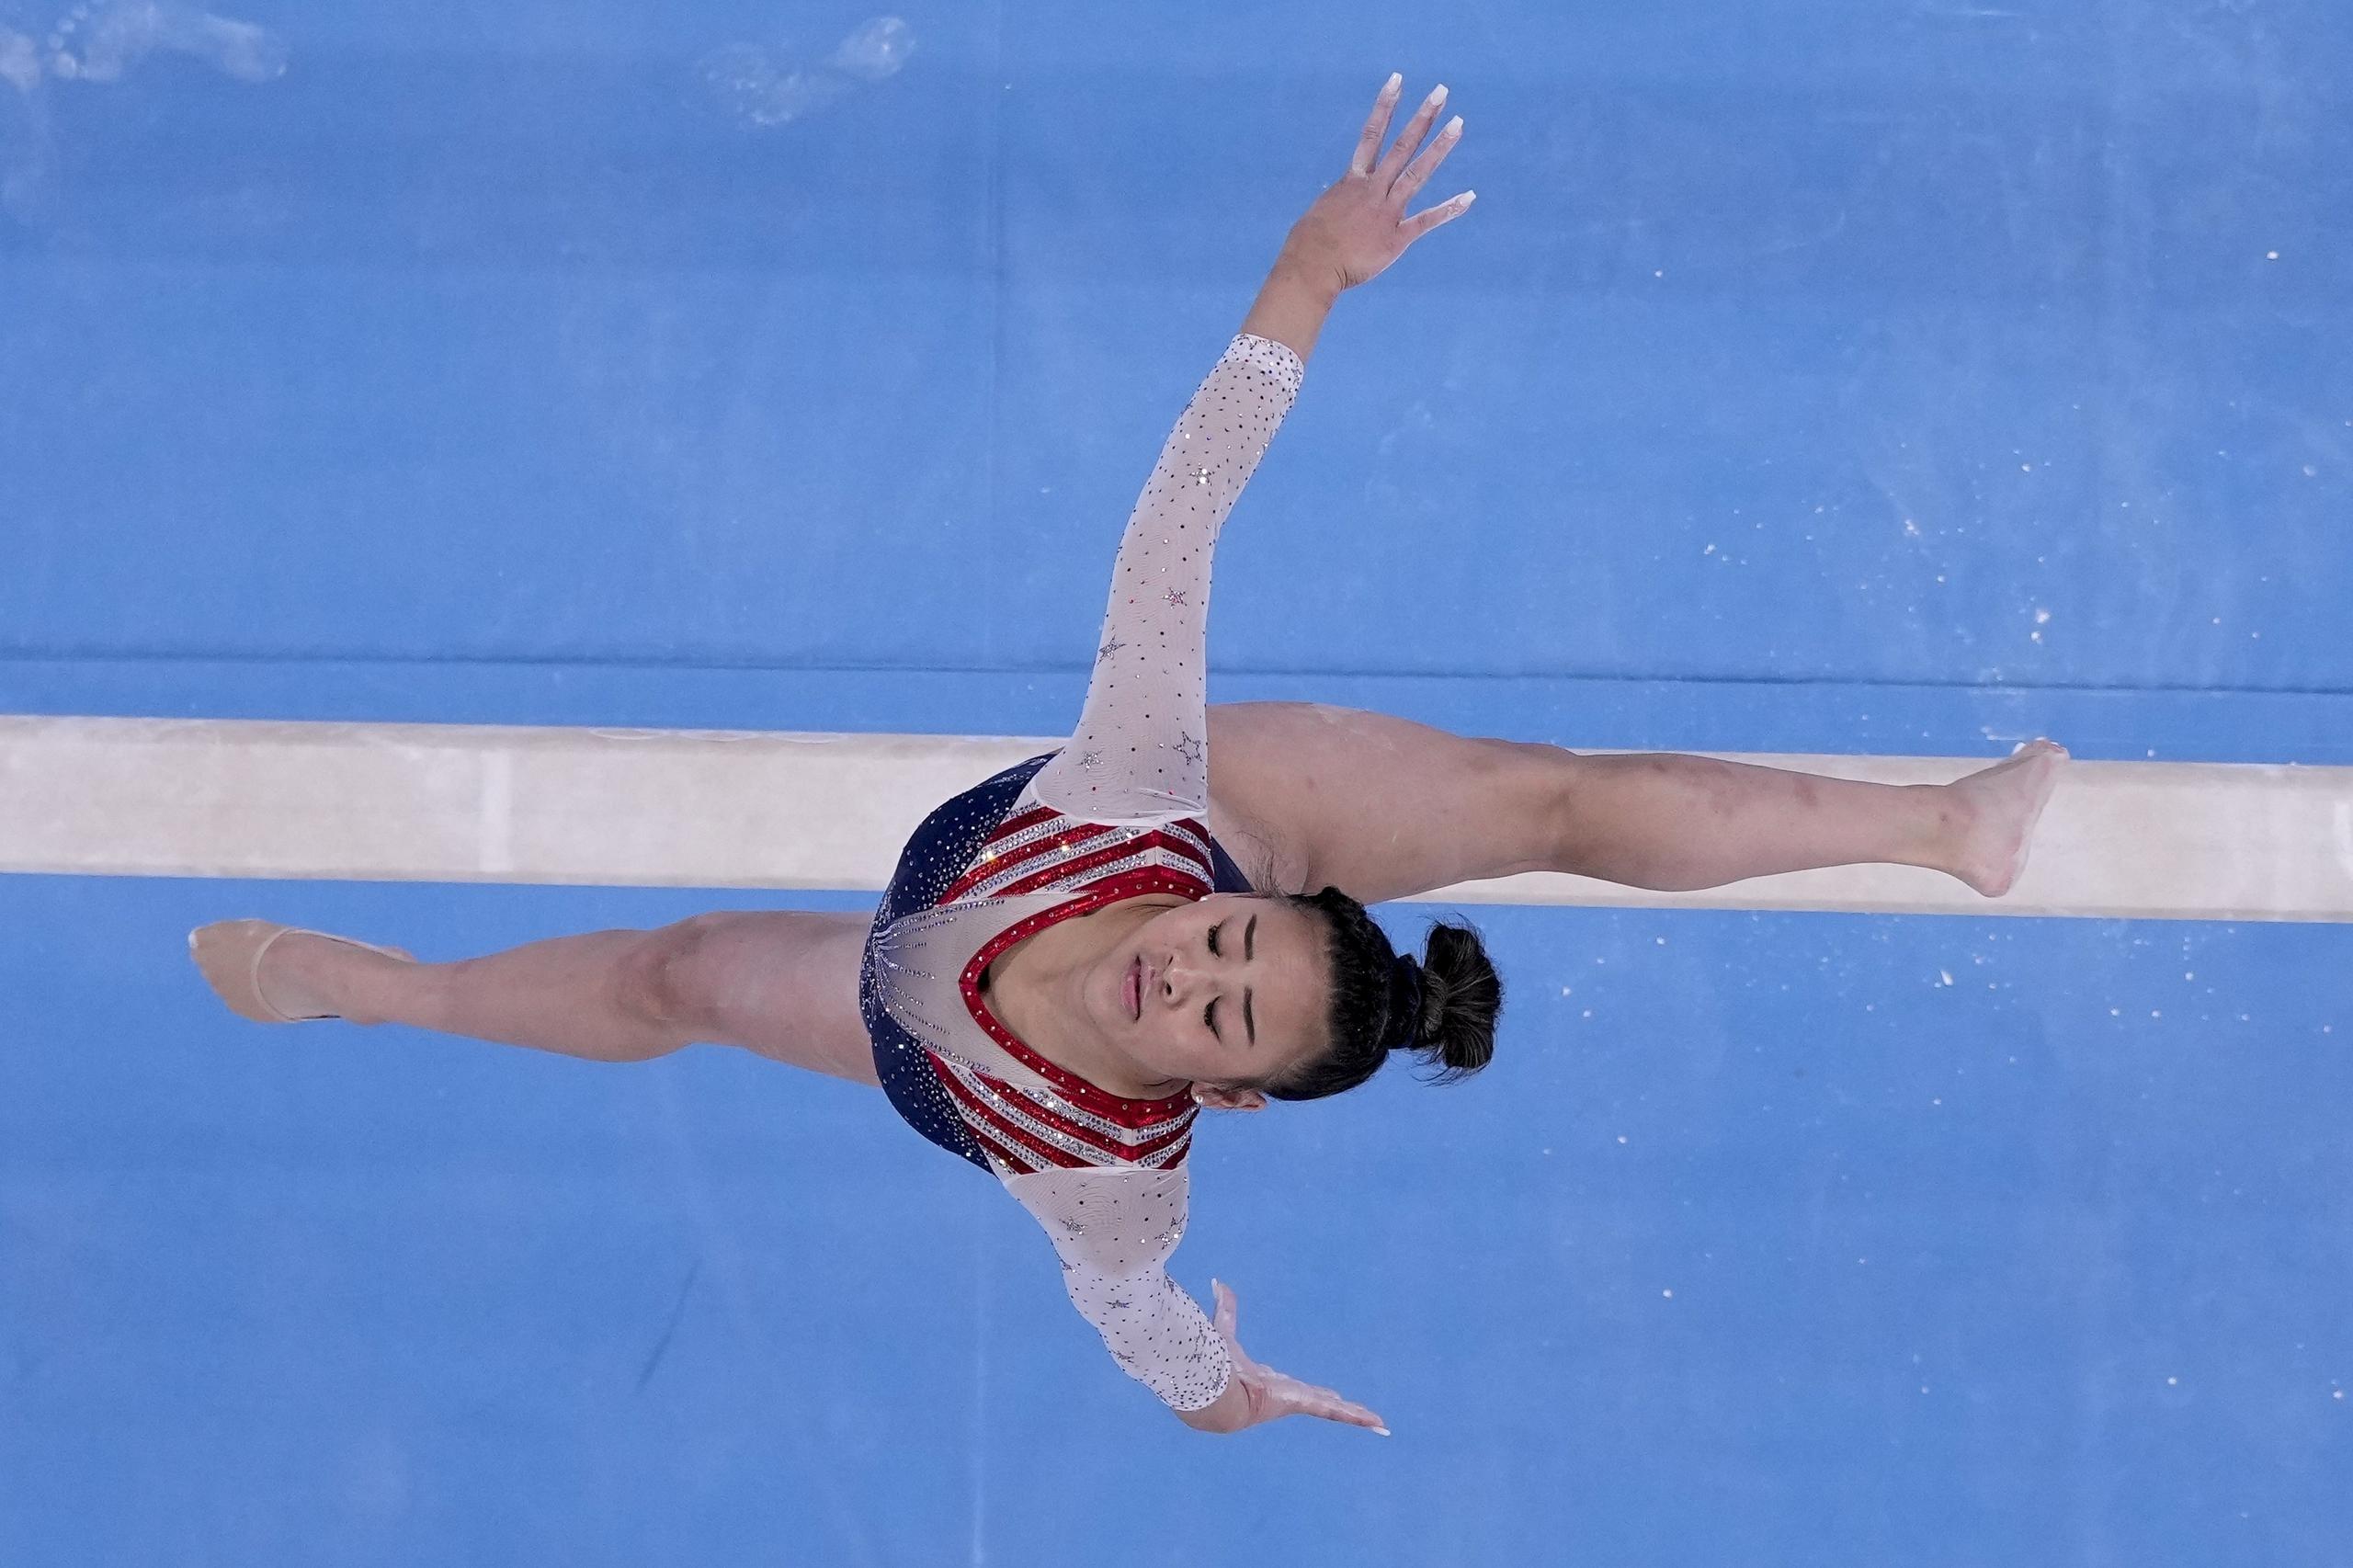 La gimnasta estadounidense Sunisa Lee durante su ejercicio en viga en la final del programa completo individual en los Juegos de Tokio, el 29 de julio de 2021, en Tokio.